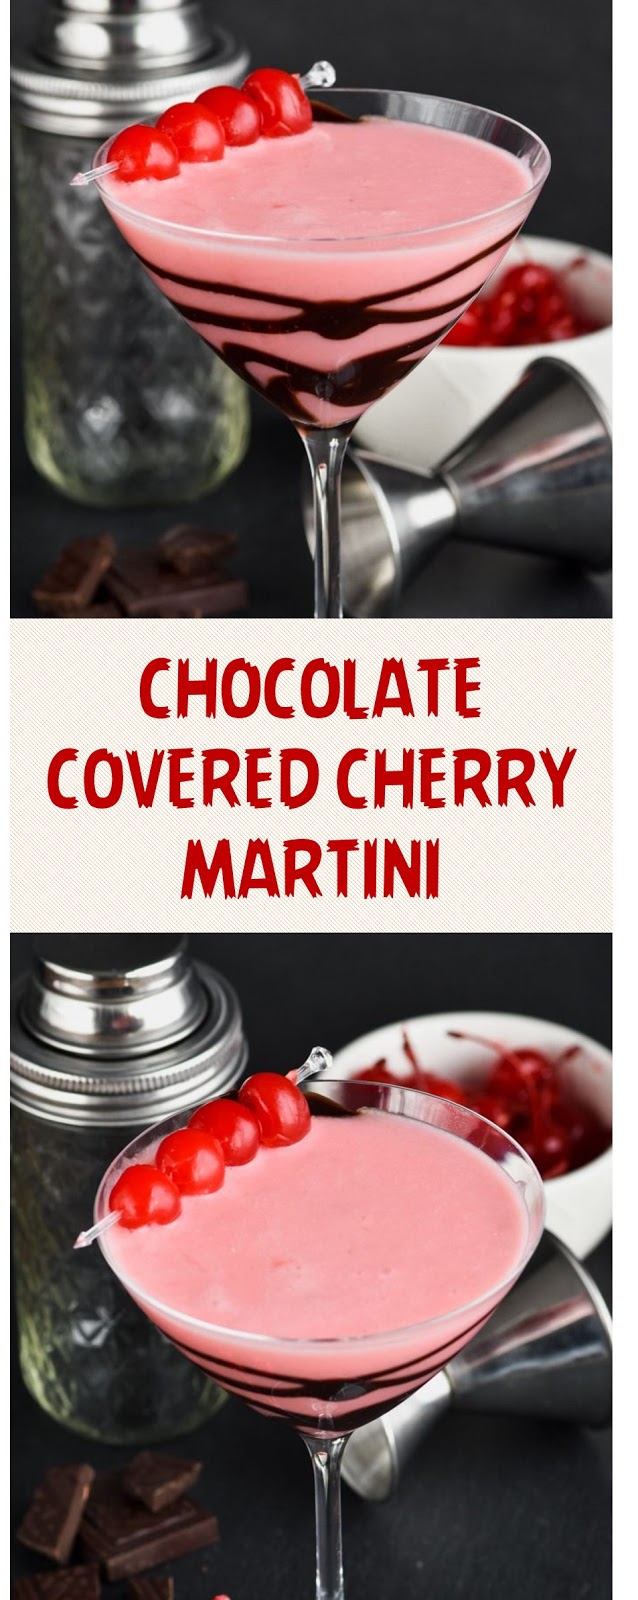 CHOCOLATE COVERED CHERRY MARTINI